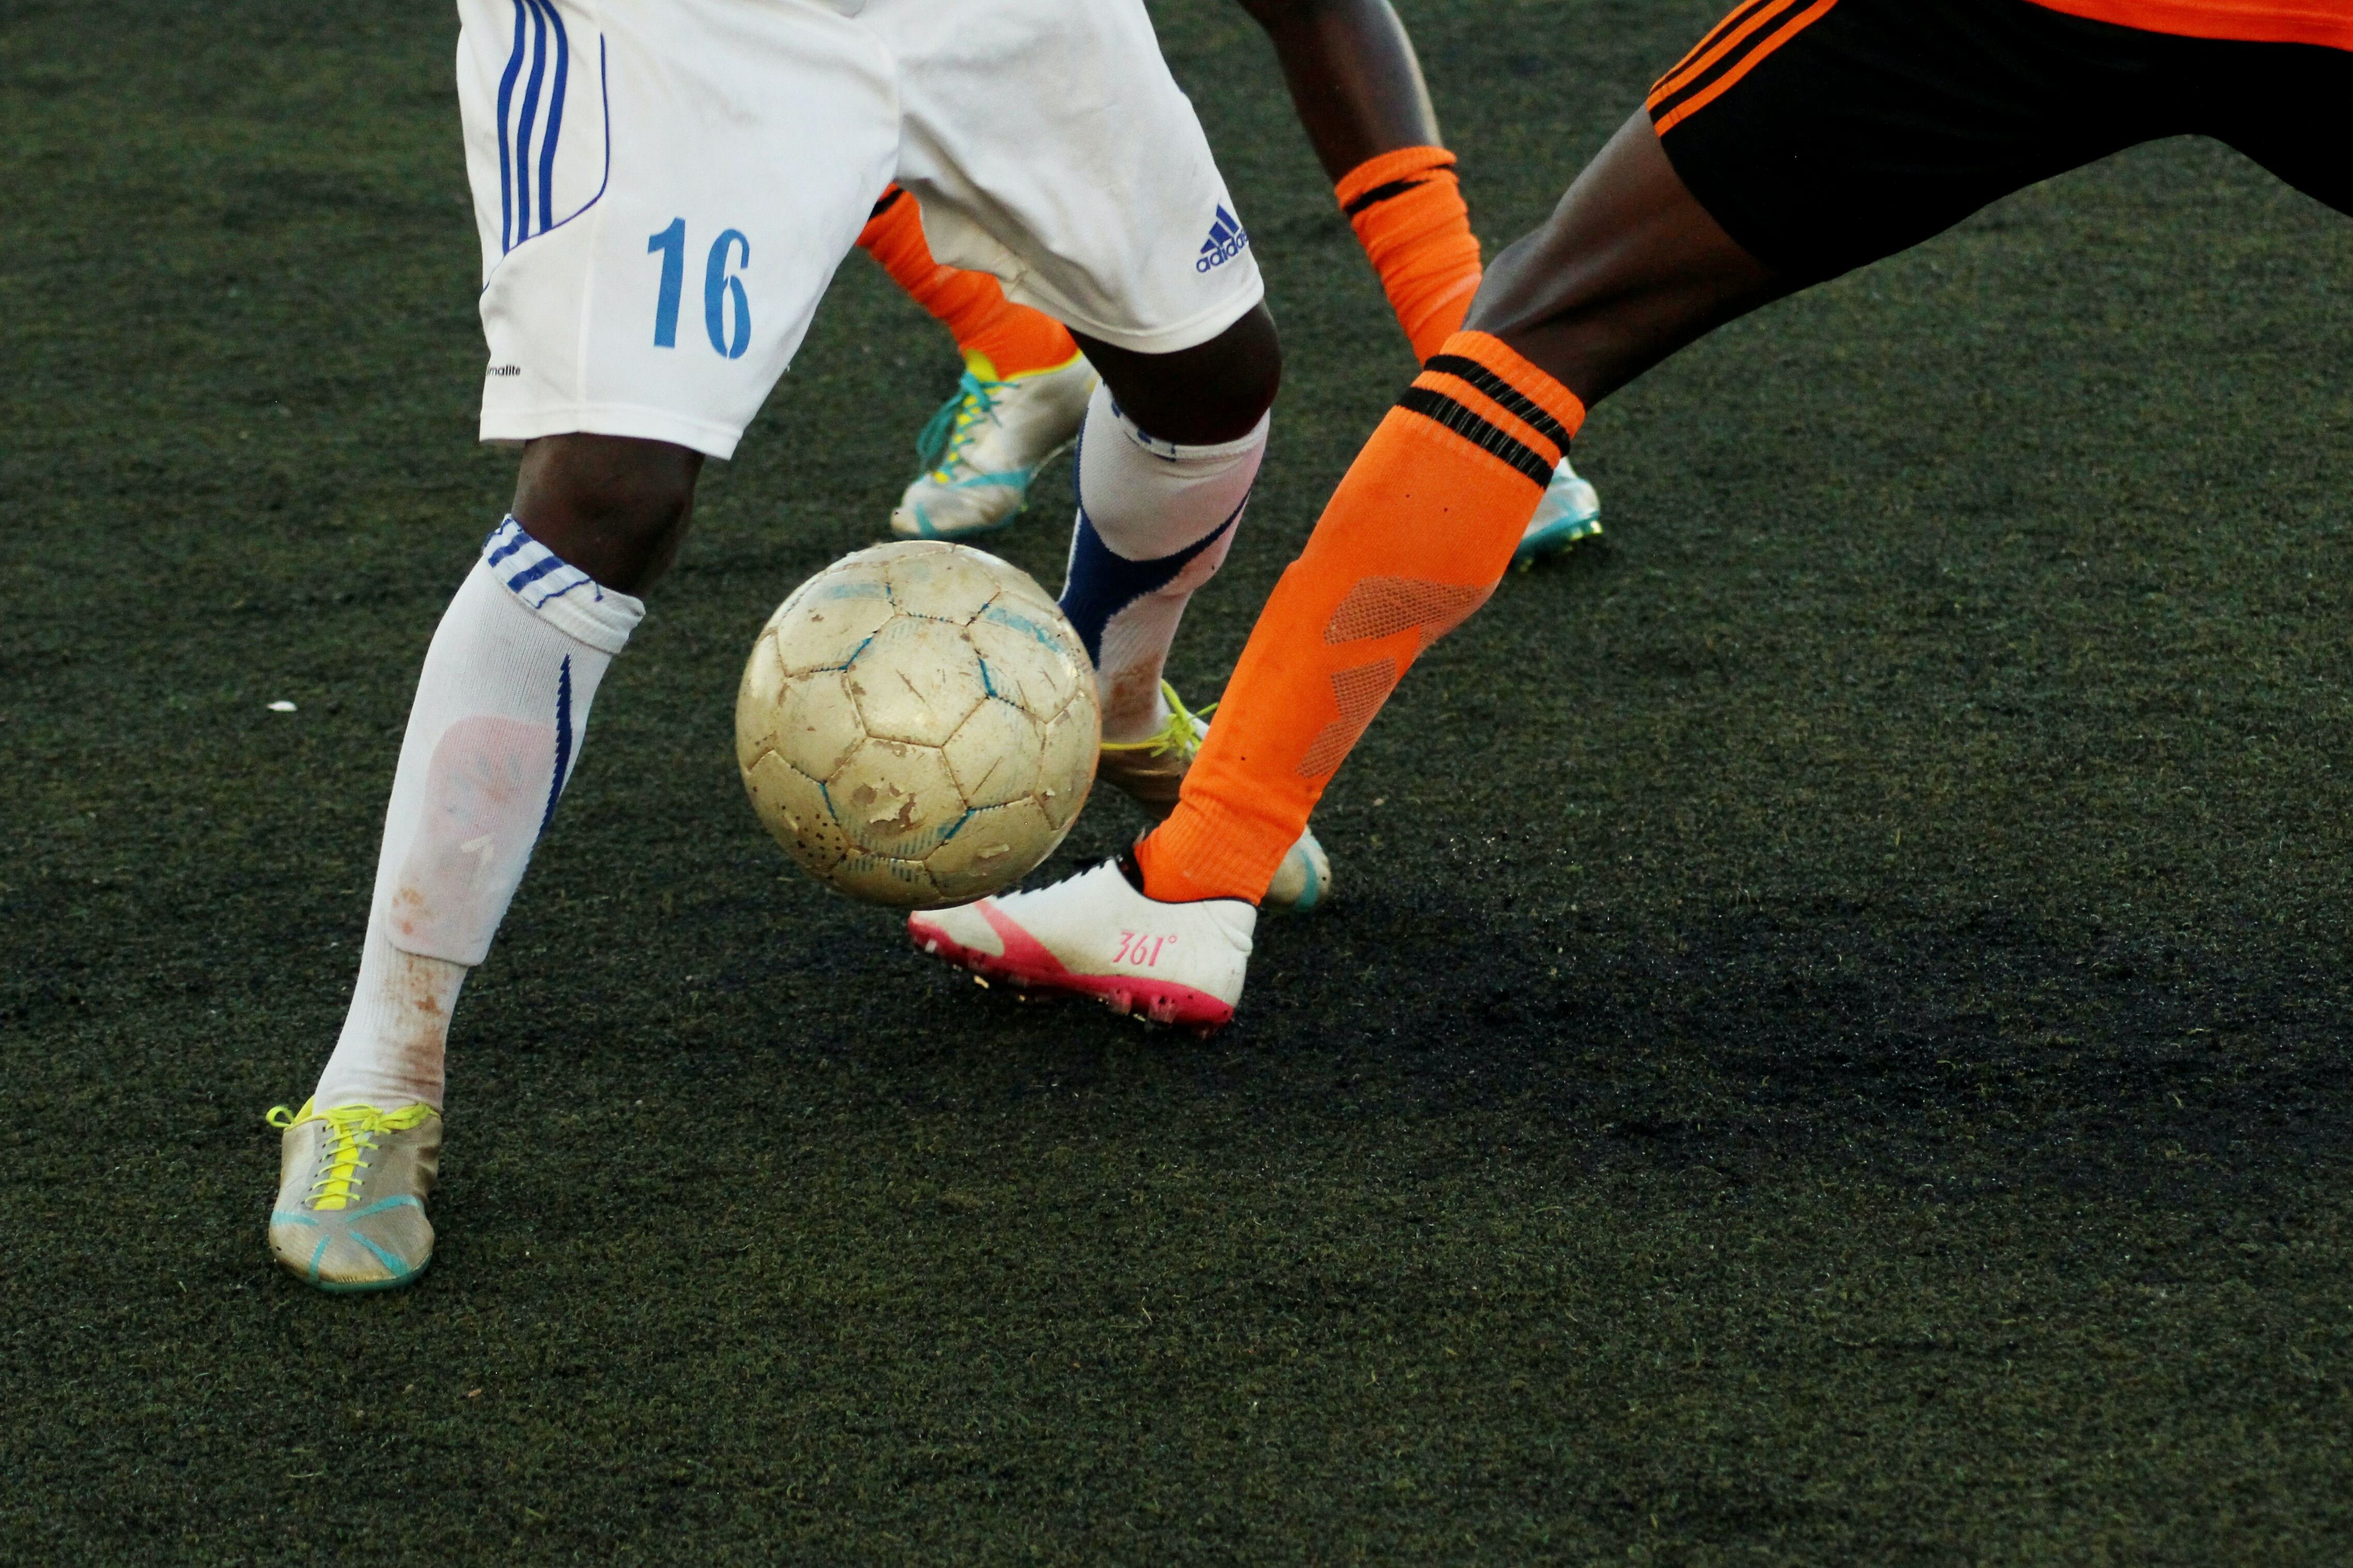 Em gramado do campo de futebol, ângulo mostra as pernas de dois jogadores, enquanto um tenta driblar o outro.